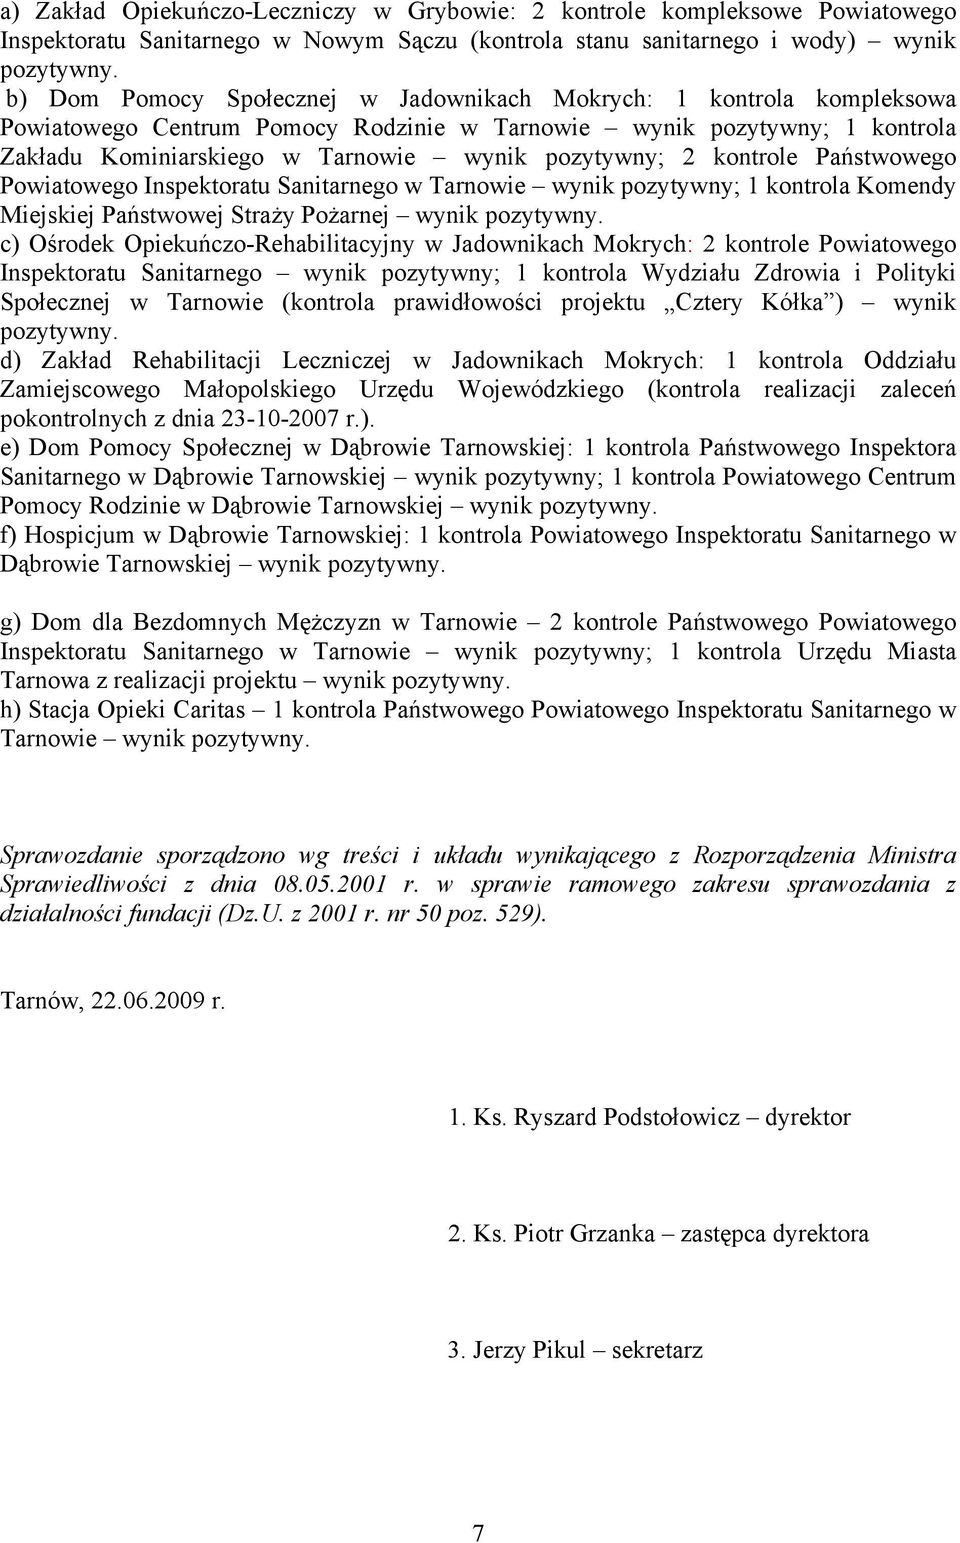 kontrole Państwowego Powiatowego Inspektoratu Sanitarnego w Tarnowie wynik pozytywny; 1 kontrola Komendy Miejskiej Państwowej Straży Pożarnej wynik pozytywny.